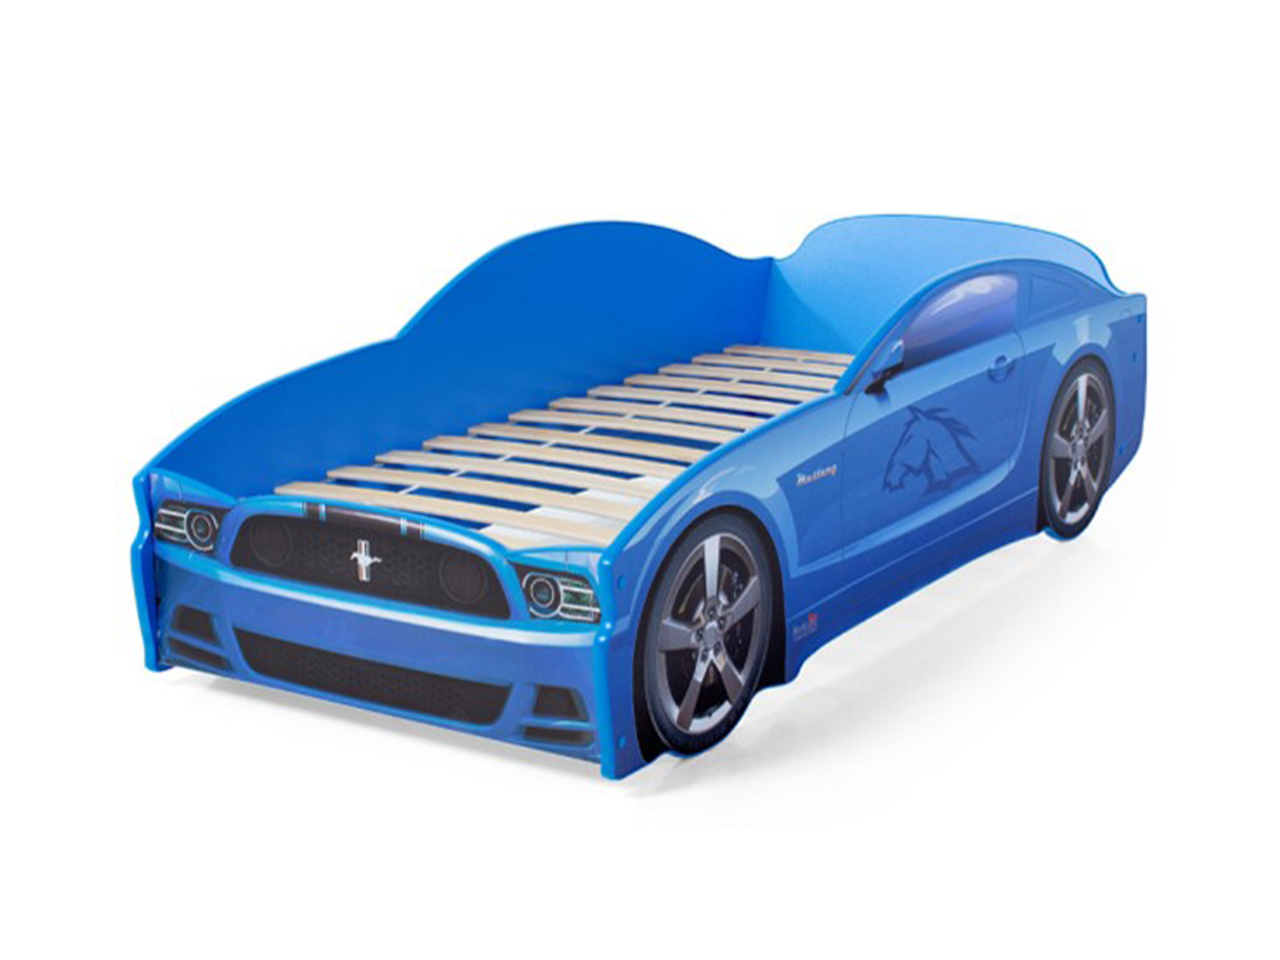 Синяя машинка для детей. Futuka Kids кровать машина. Детская кровать Futuka Kids. Детская кровать Мустанг. Кровать машина Мустанг Лайт.